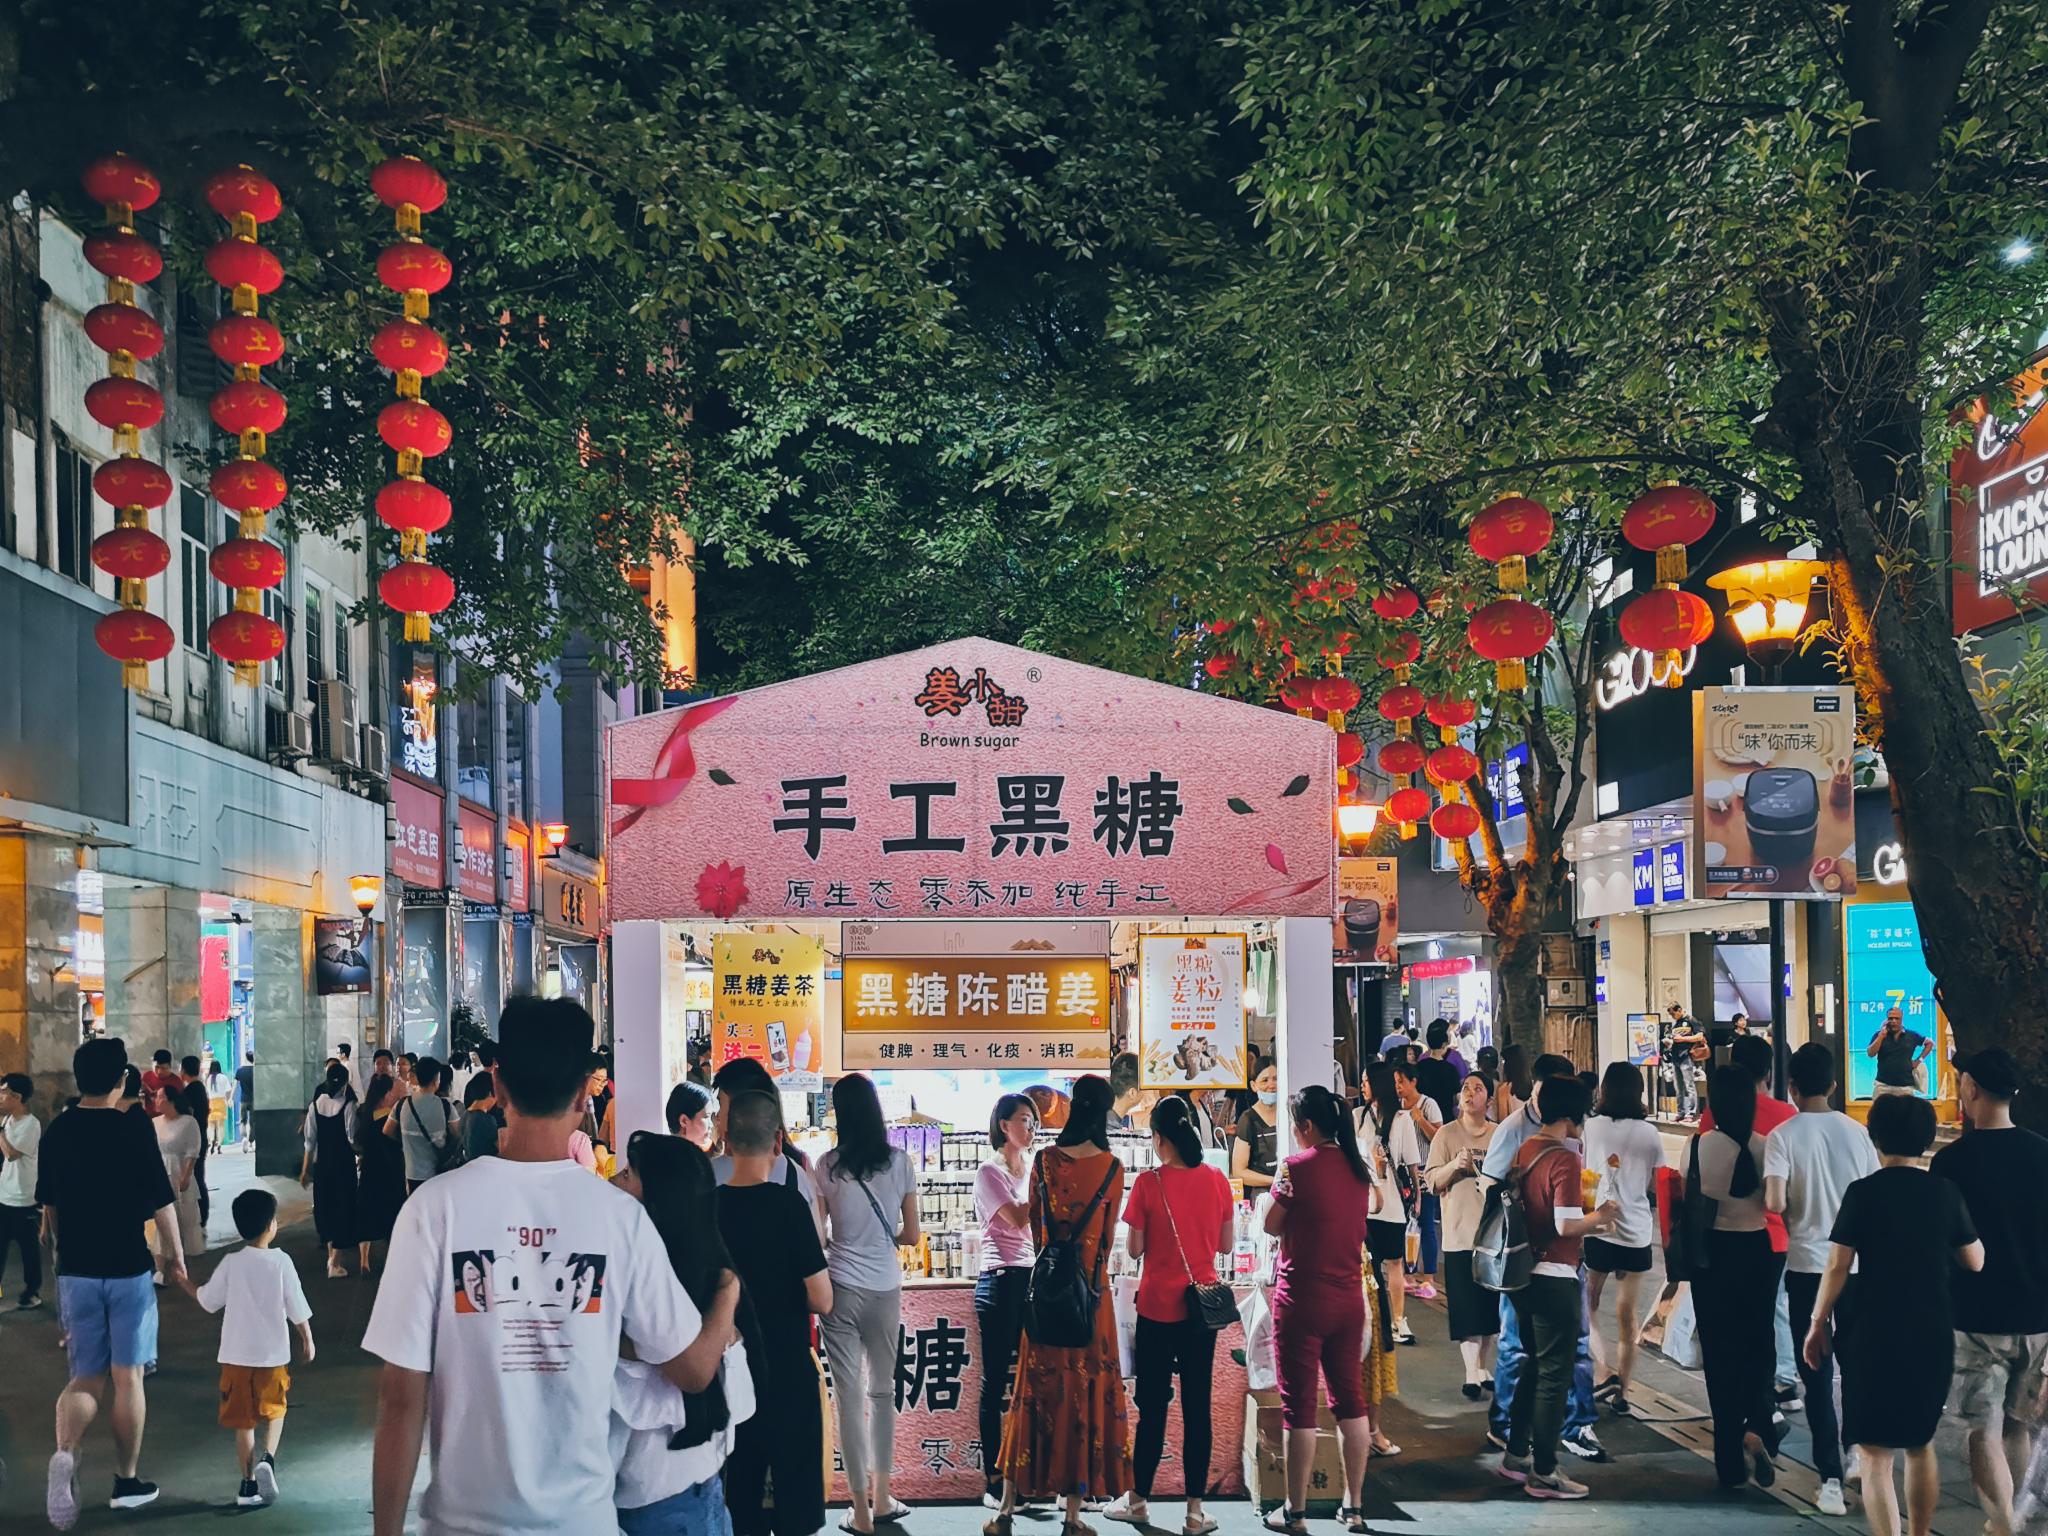 每座旅游城市都有一条美食街，这几条美食街游客比景区还多 [11P]|美食指南 - 武当休闲山庄 - 稳定,和谐,人性化的中文社区